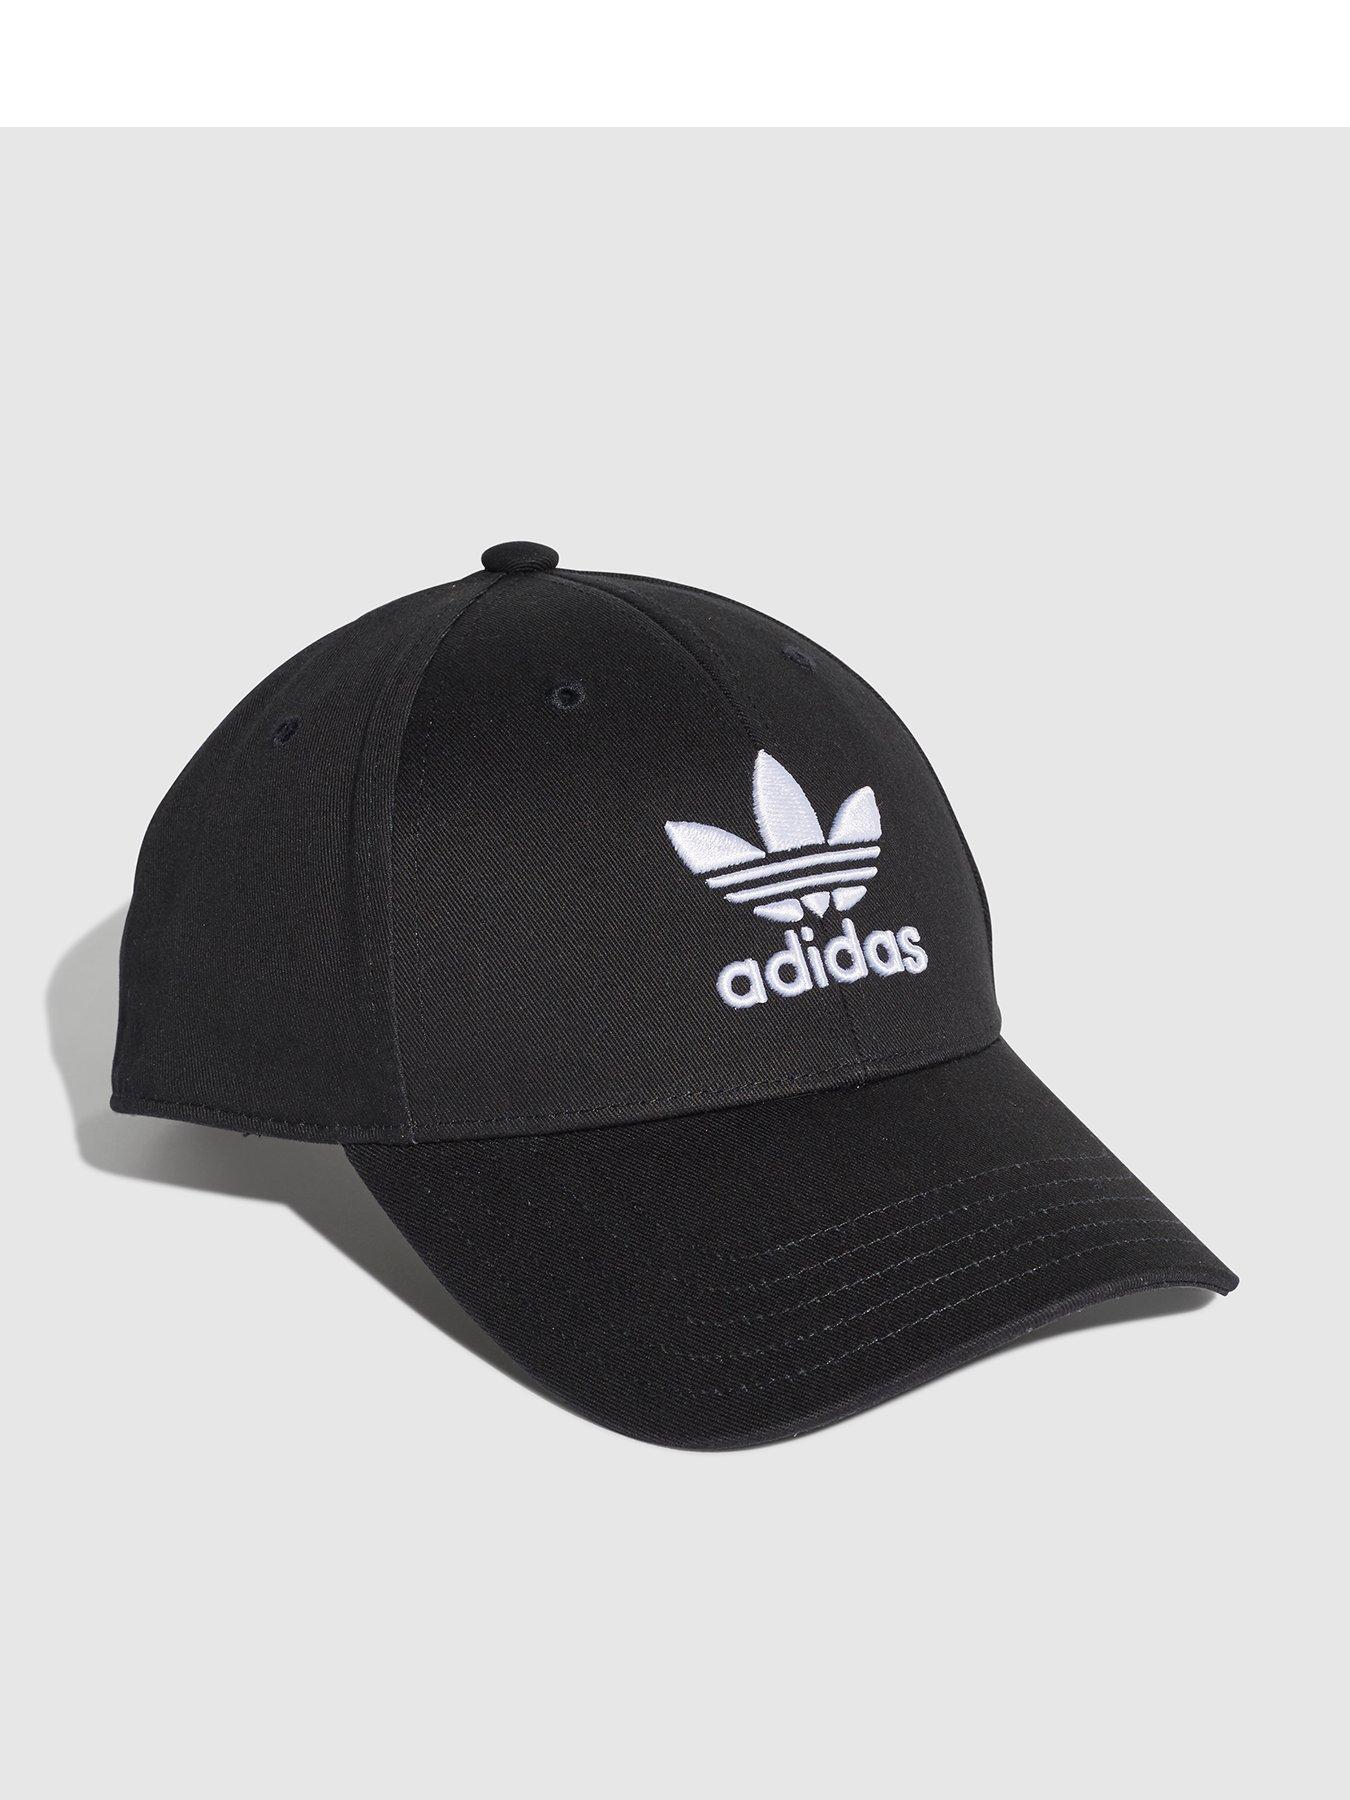 Adidas | Caps \u0026 hats | Accessories 